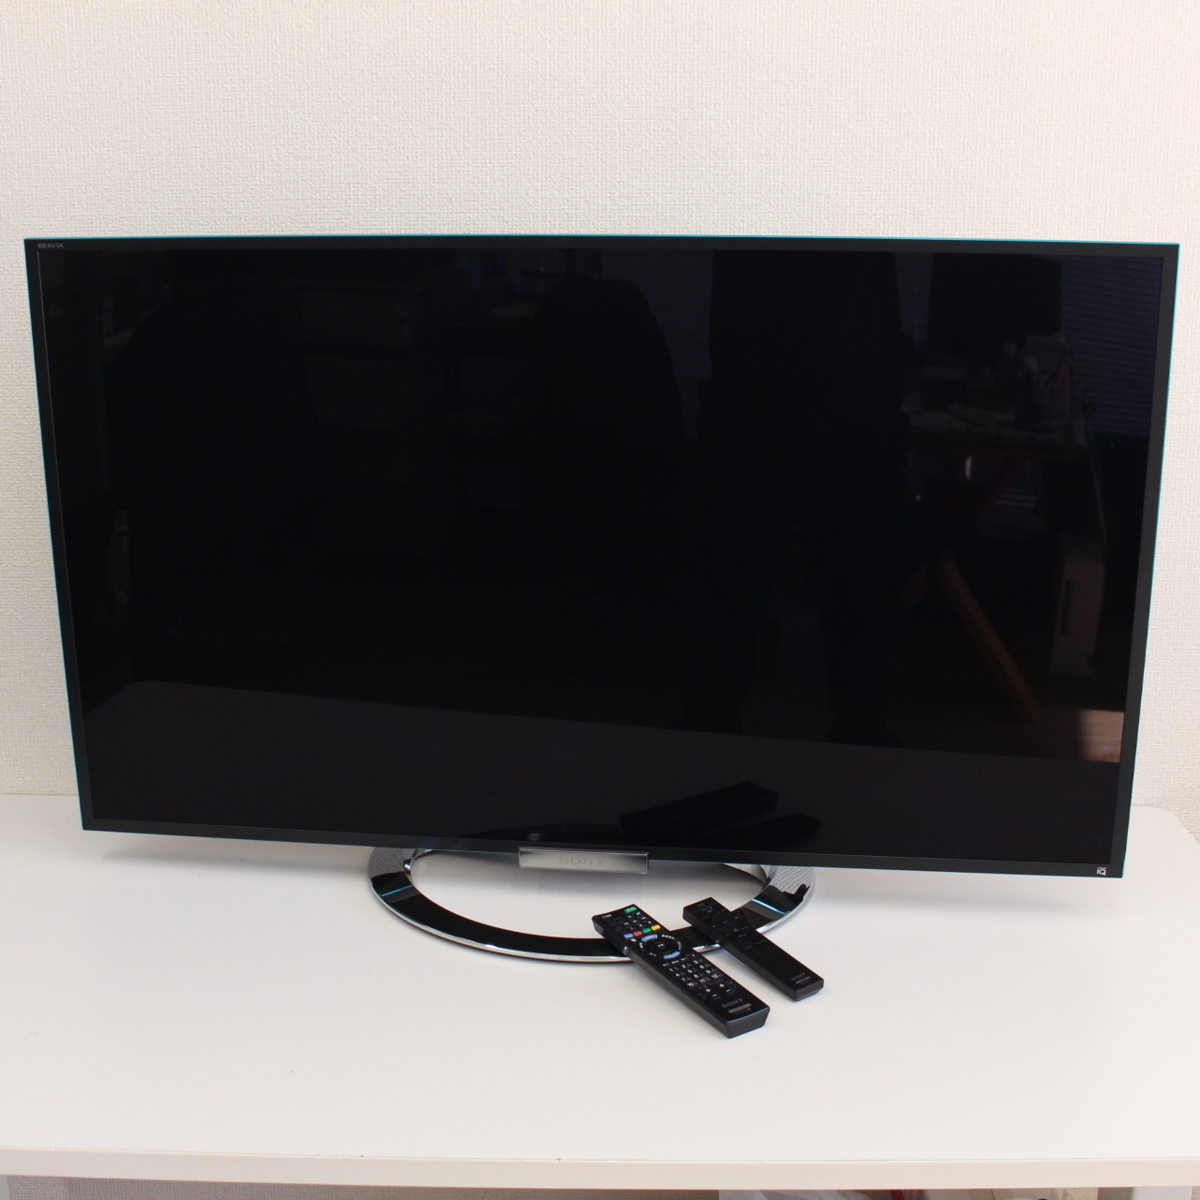 横浜市中区にて ソニー テレビ KDL-46W900A 2013年製 を出張買取させて頂きました。